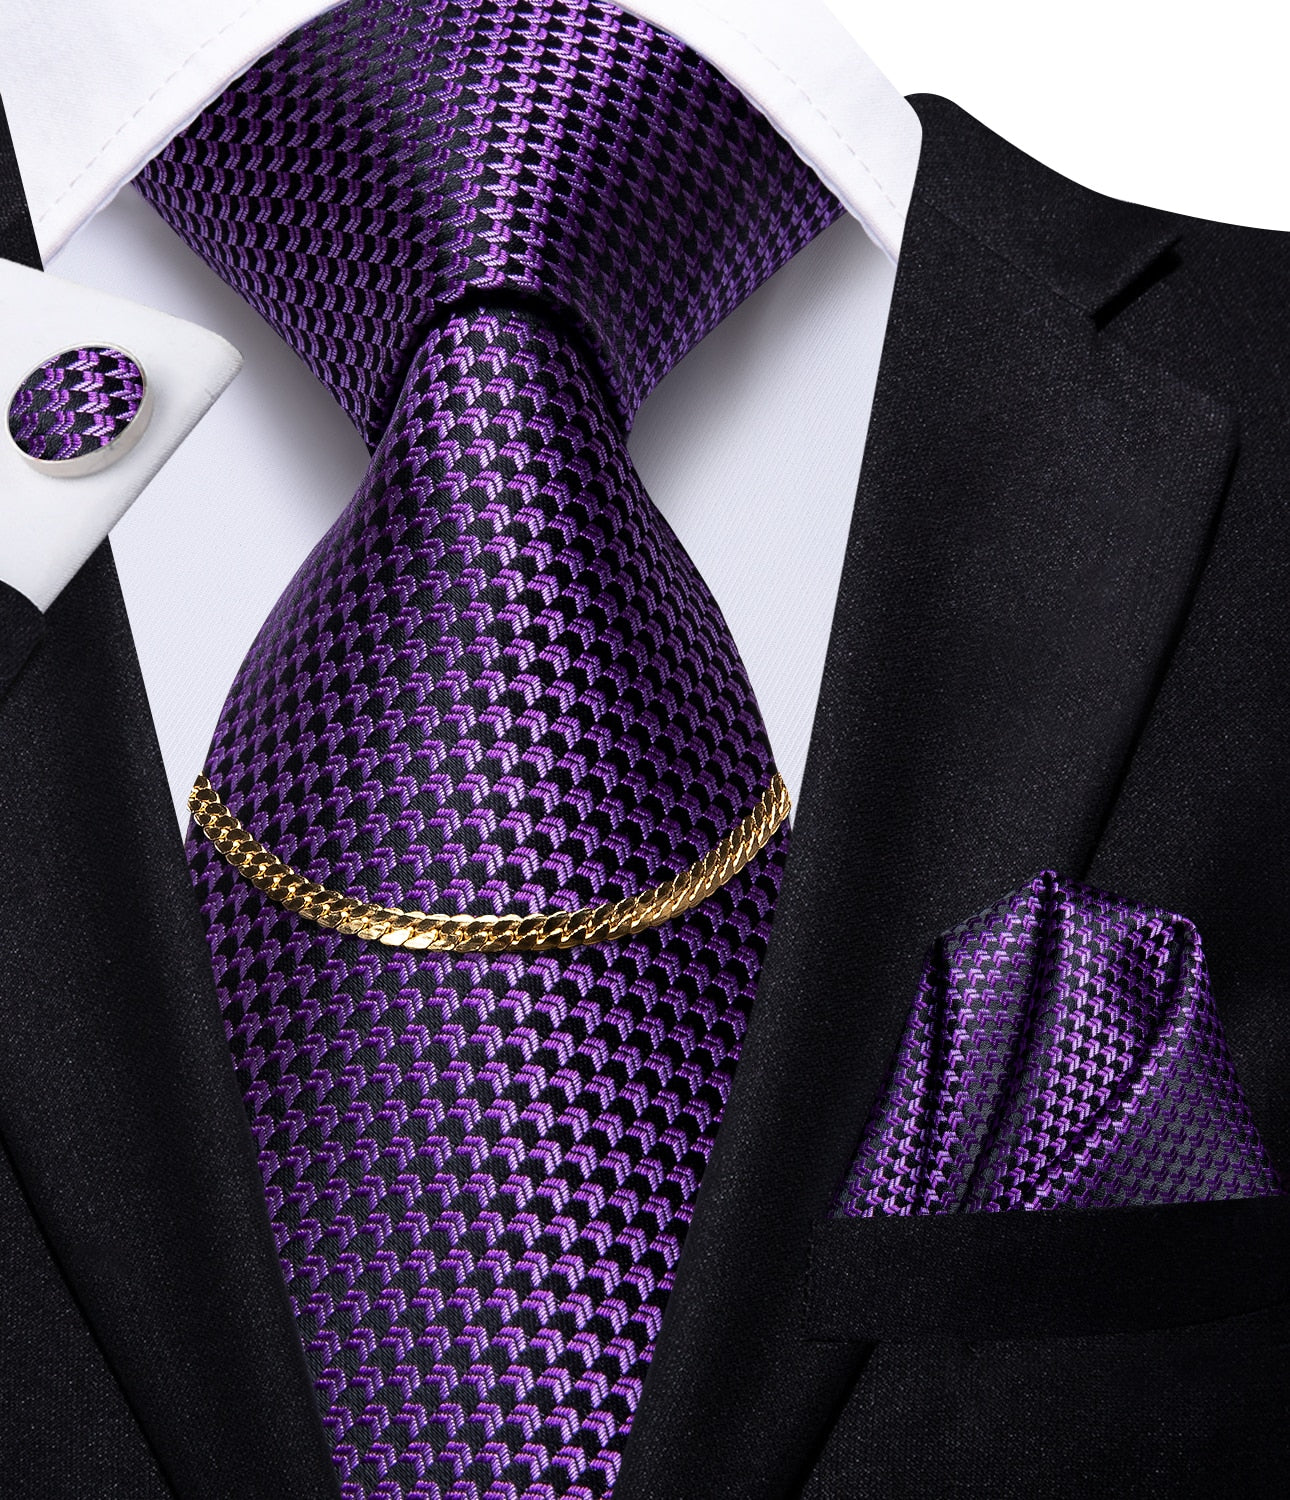 Hi-Tie Luxury Design Set ~ Fashion Tie ~ Pocket Square ~ Cufflinks!